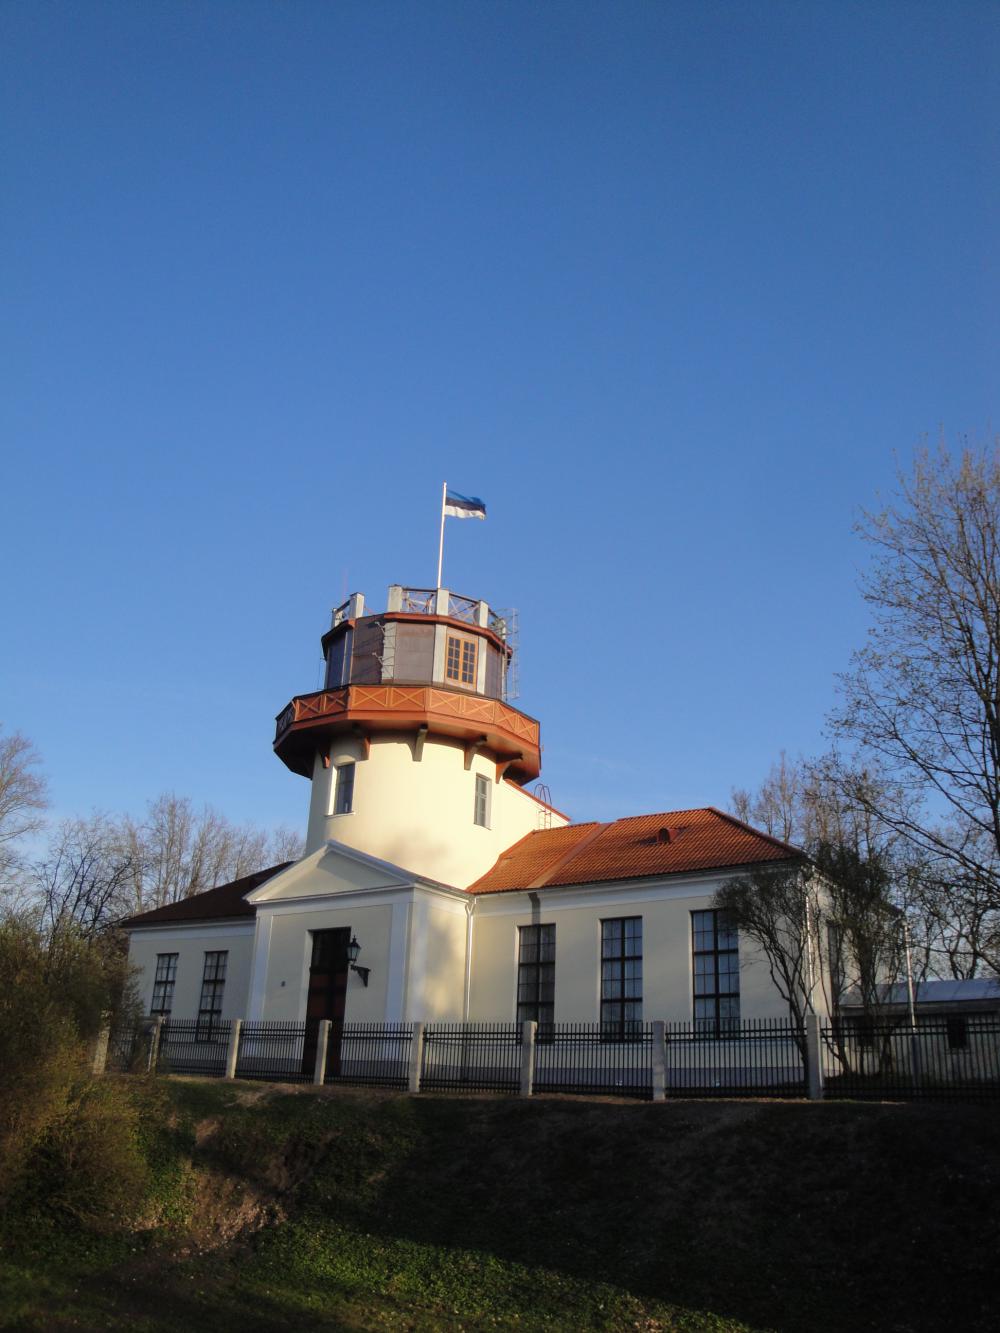 Tartu Observatory (1810), Dorpat Observatory until